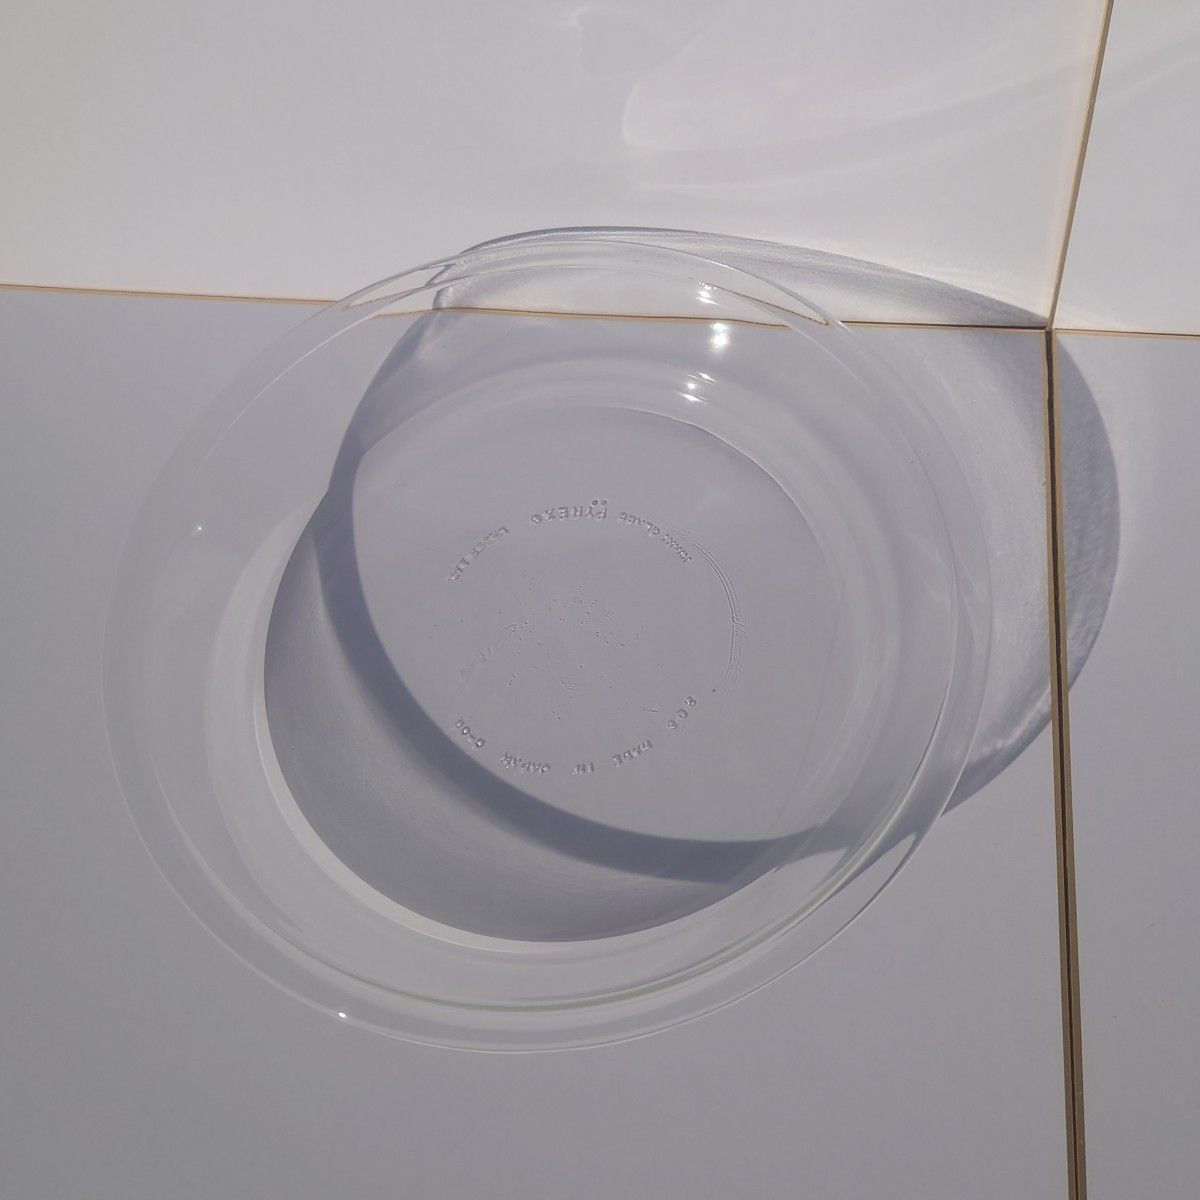 【未使用品】パイレックス パイ皿 23cm IWAKI PYREX 耐熱ガラス食器 MADE IN JAPAN